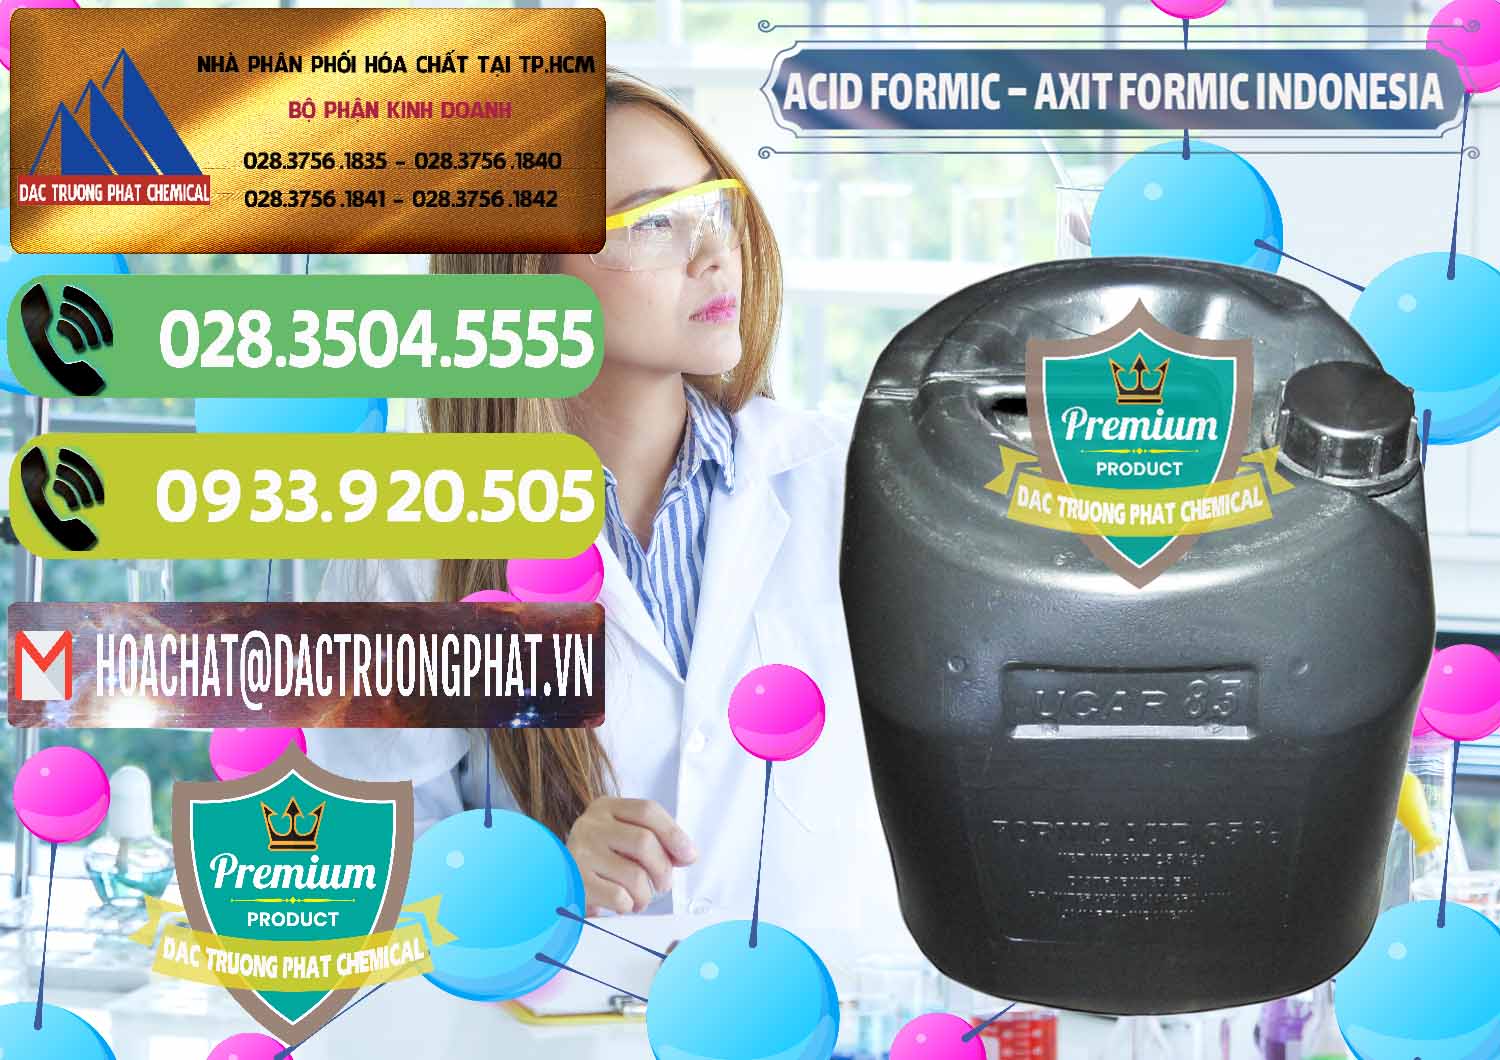 Đơn vị bán ( cung cấp ) Acid Formic - Axit Formic Indonesia - 0026 - Cty bán _ cung cấp hóa chất tại TP.HCM - hoachatmientay.vn